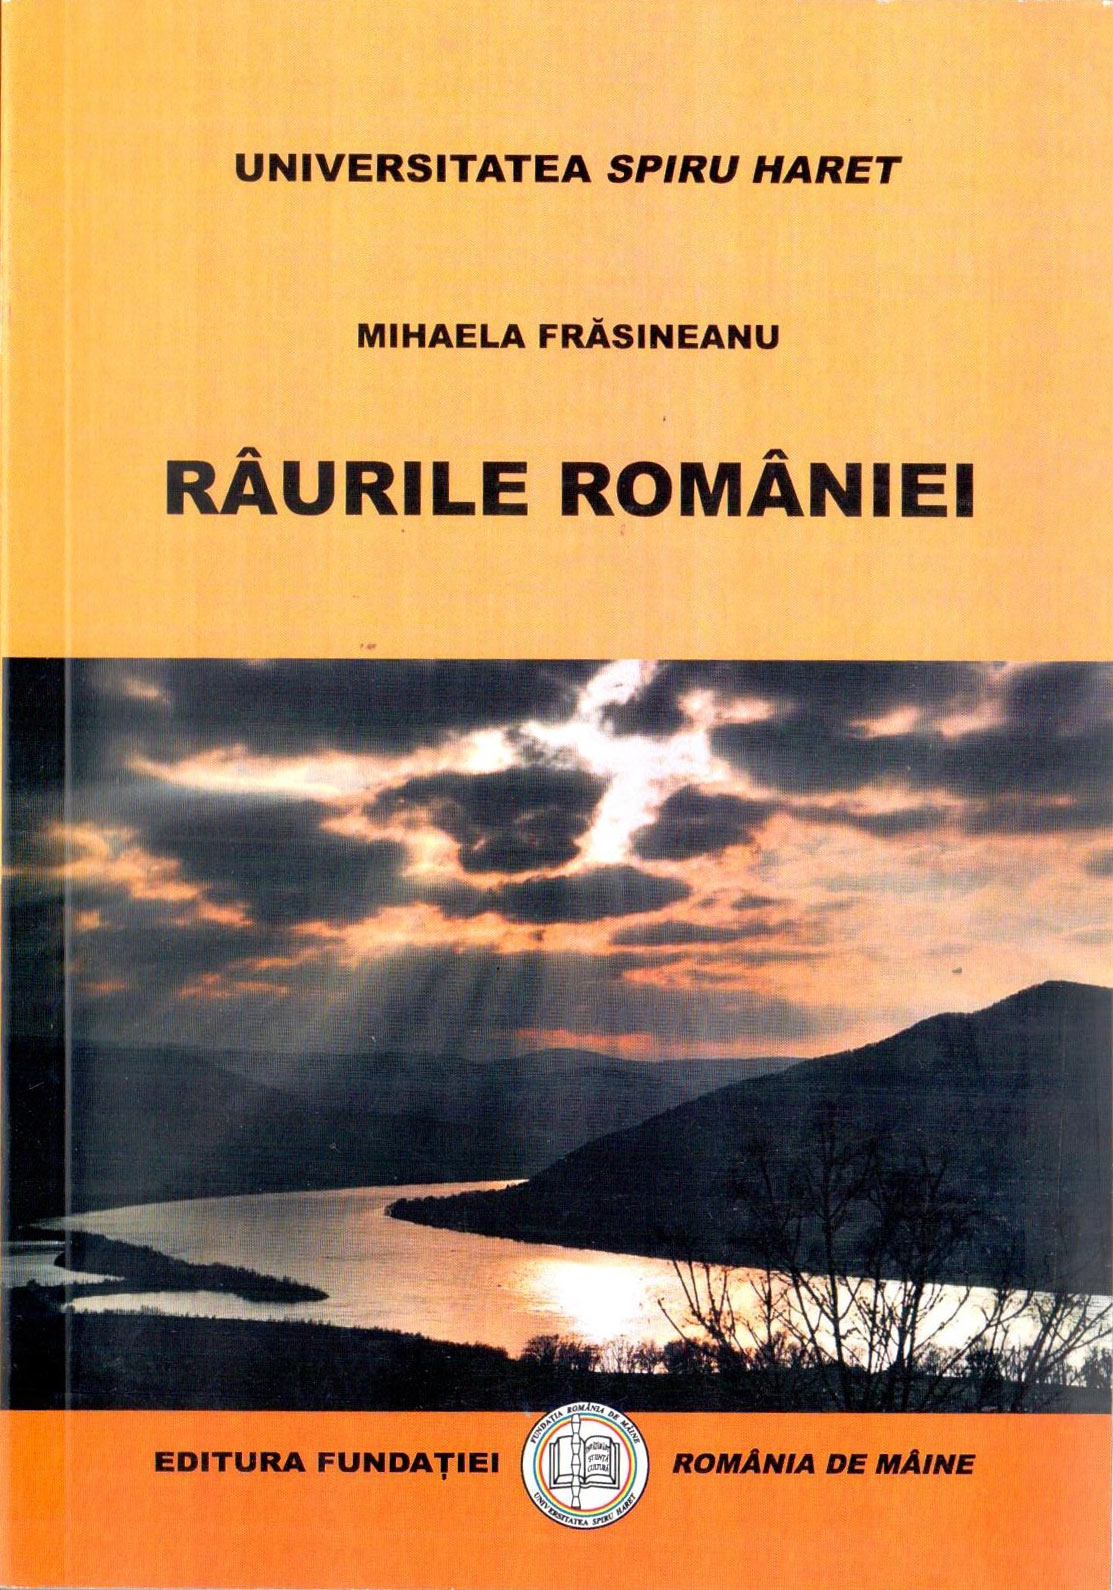 Coperta cărții: Raurile Romaniei - lonnieyoungblood.com